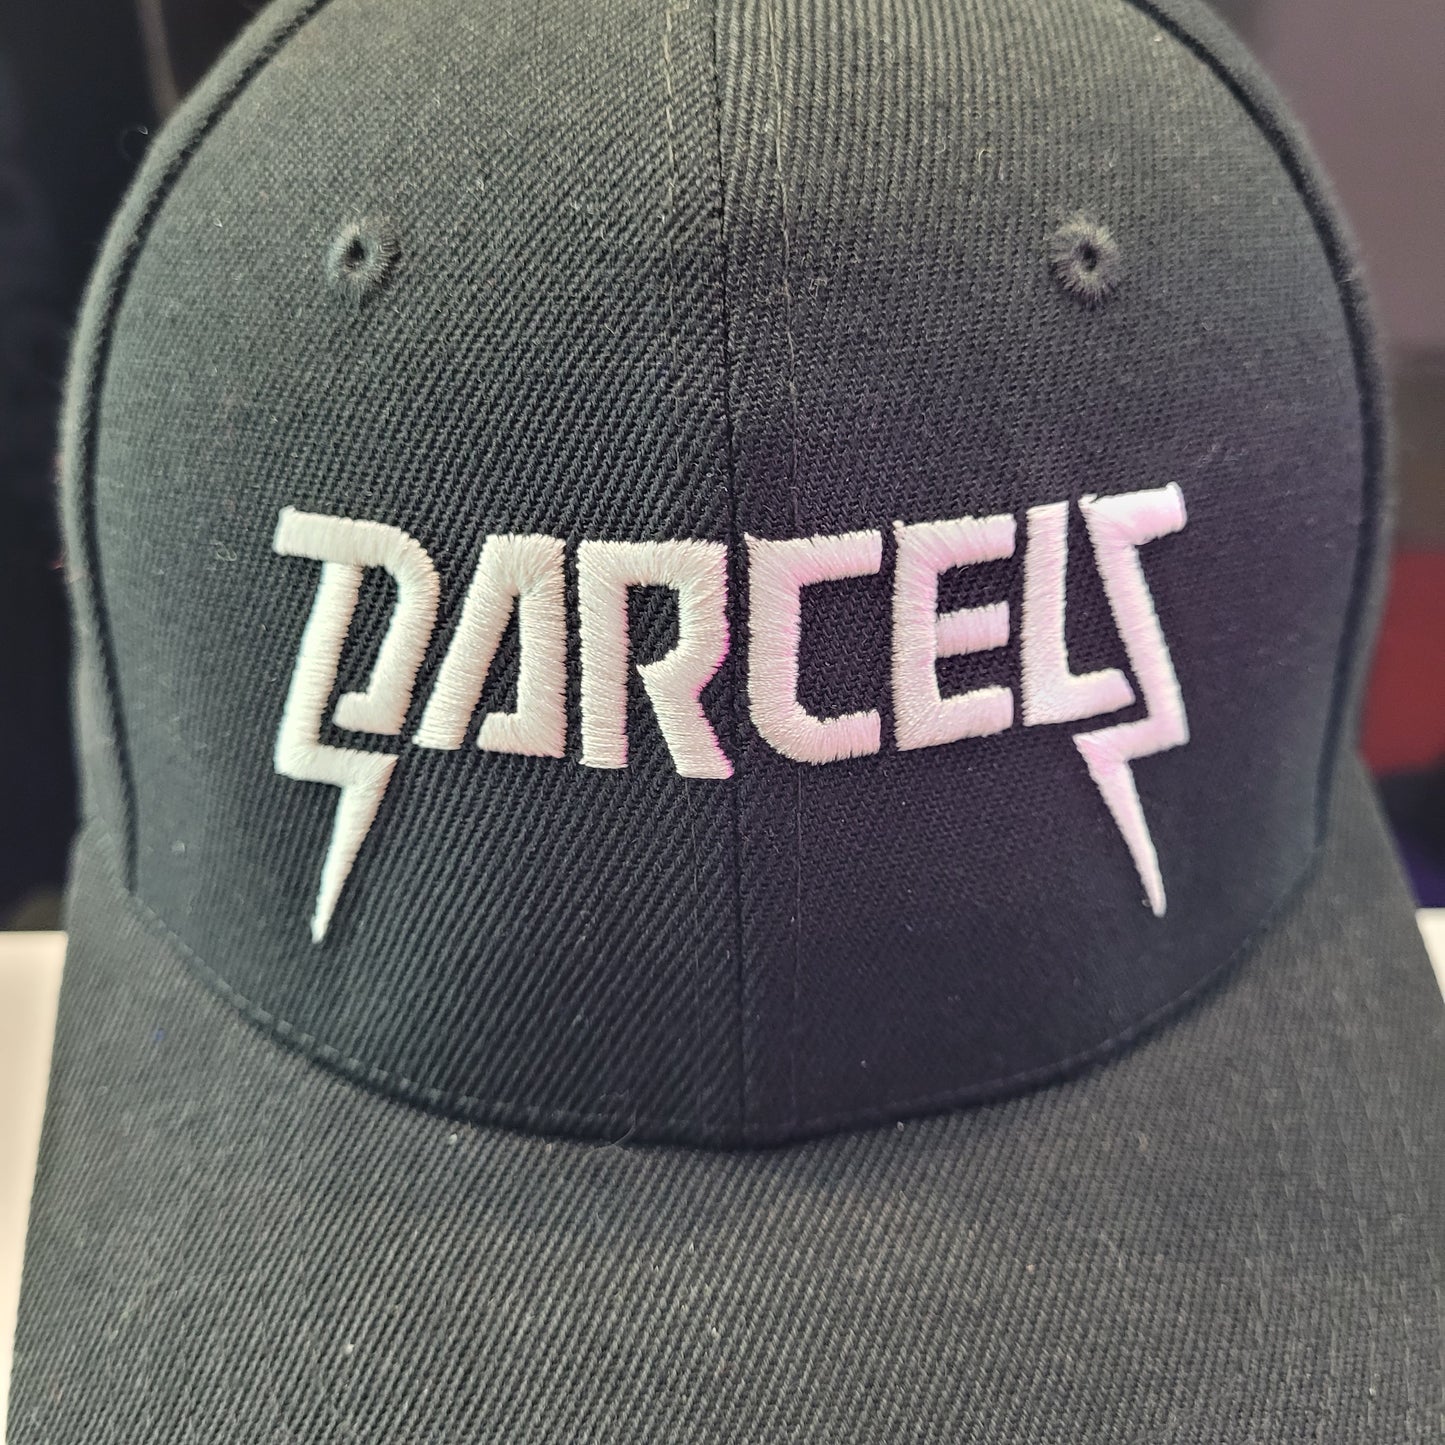 DD Cap - Metal Cap Darcels Logo - Black